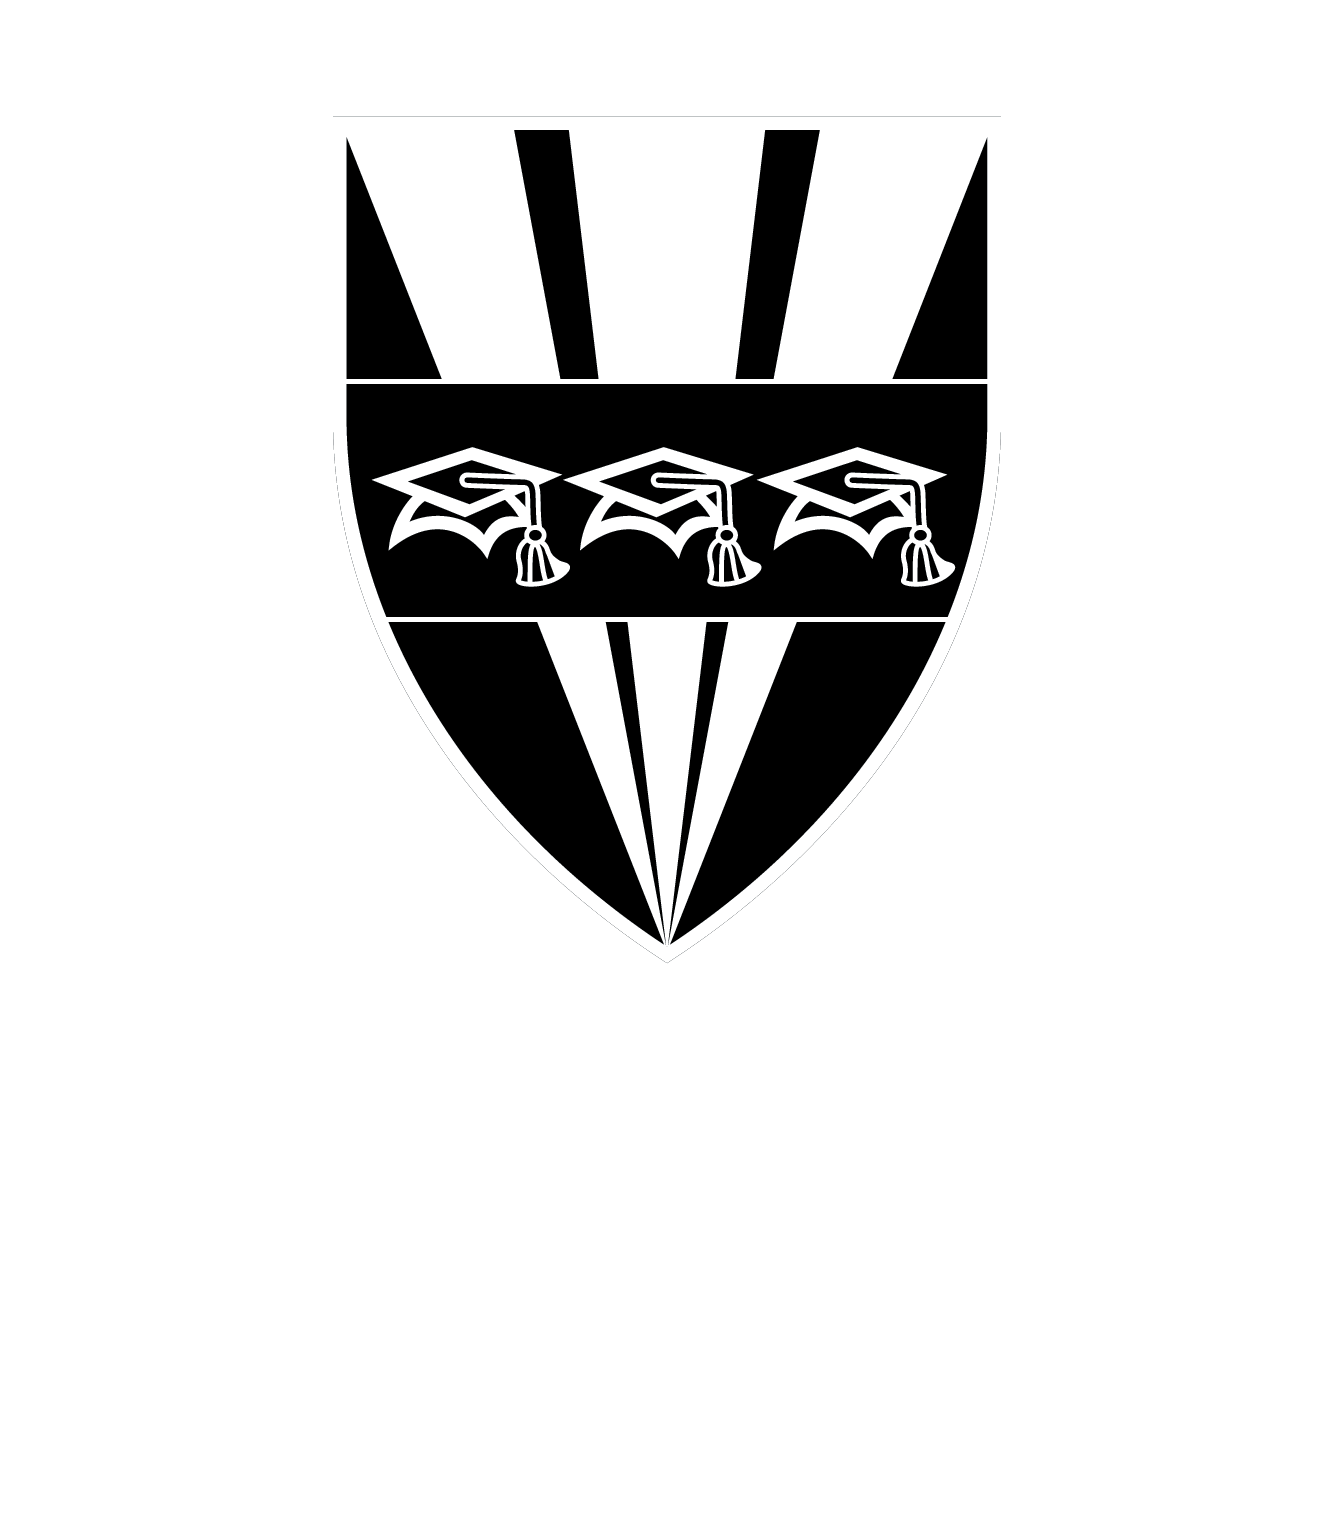 Université du Québec à Trois-Rivières. Bureau de pédagogie et de formation à distance.